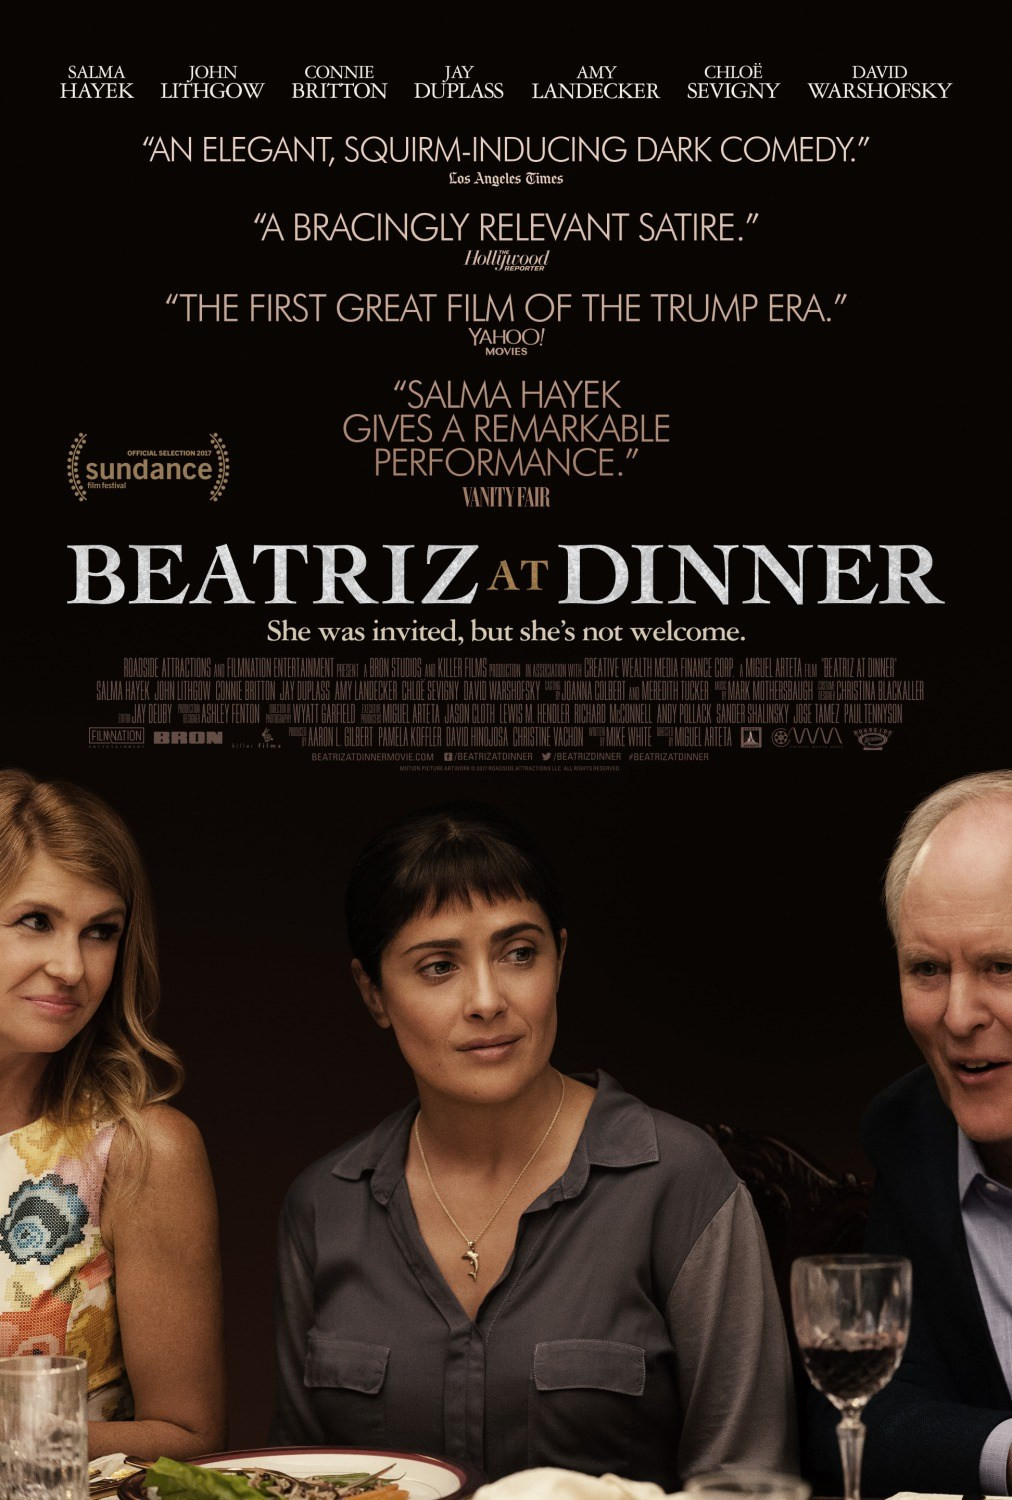 The Dinner Movie Trailer
 Beatriz at Dinner Movie Poster Teaser Trailer